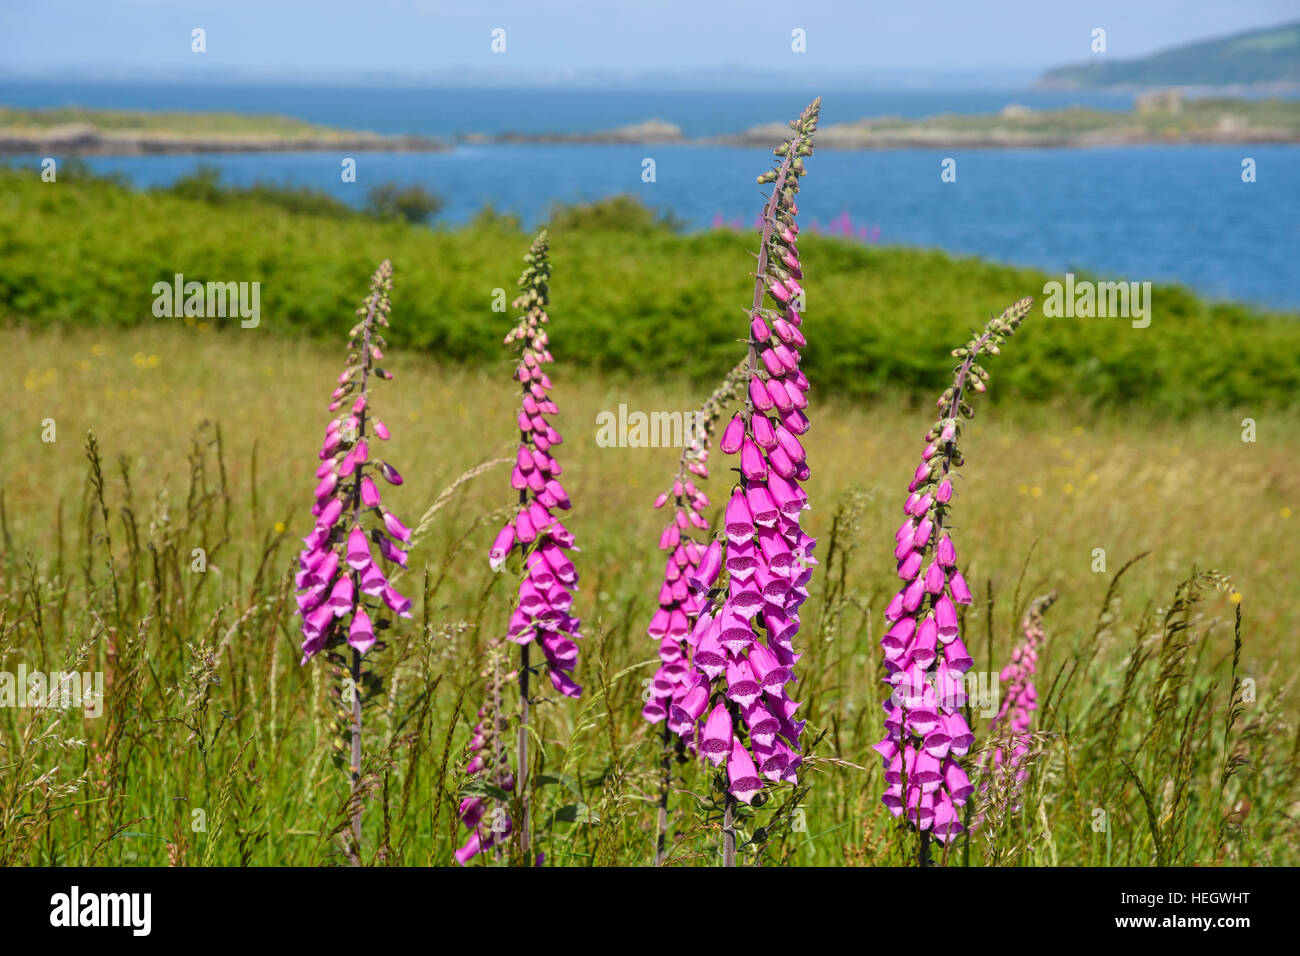 La digitale pourpre, Digitalis purpurea, wildflower, Dumfries et Galloway, Écosse Banque D'Images